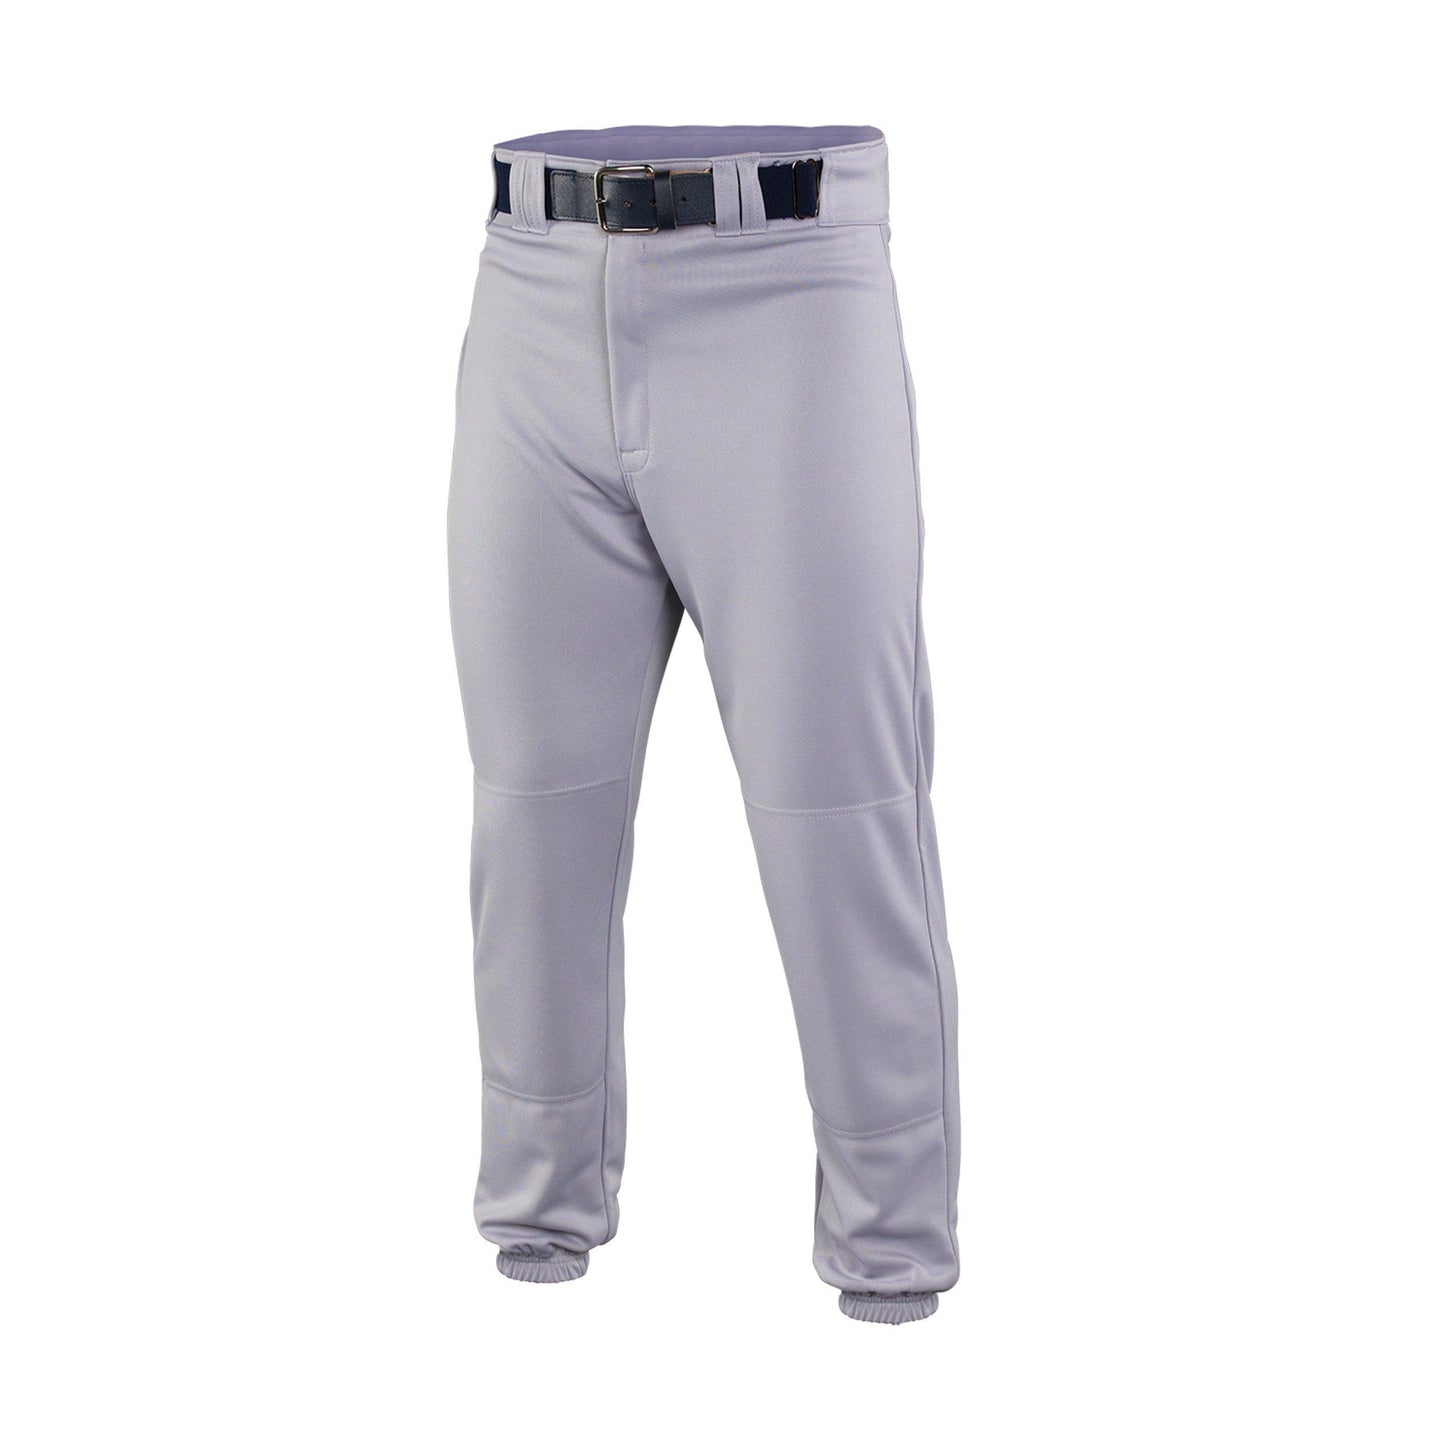 Easton Deluxe Pants Grey